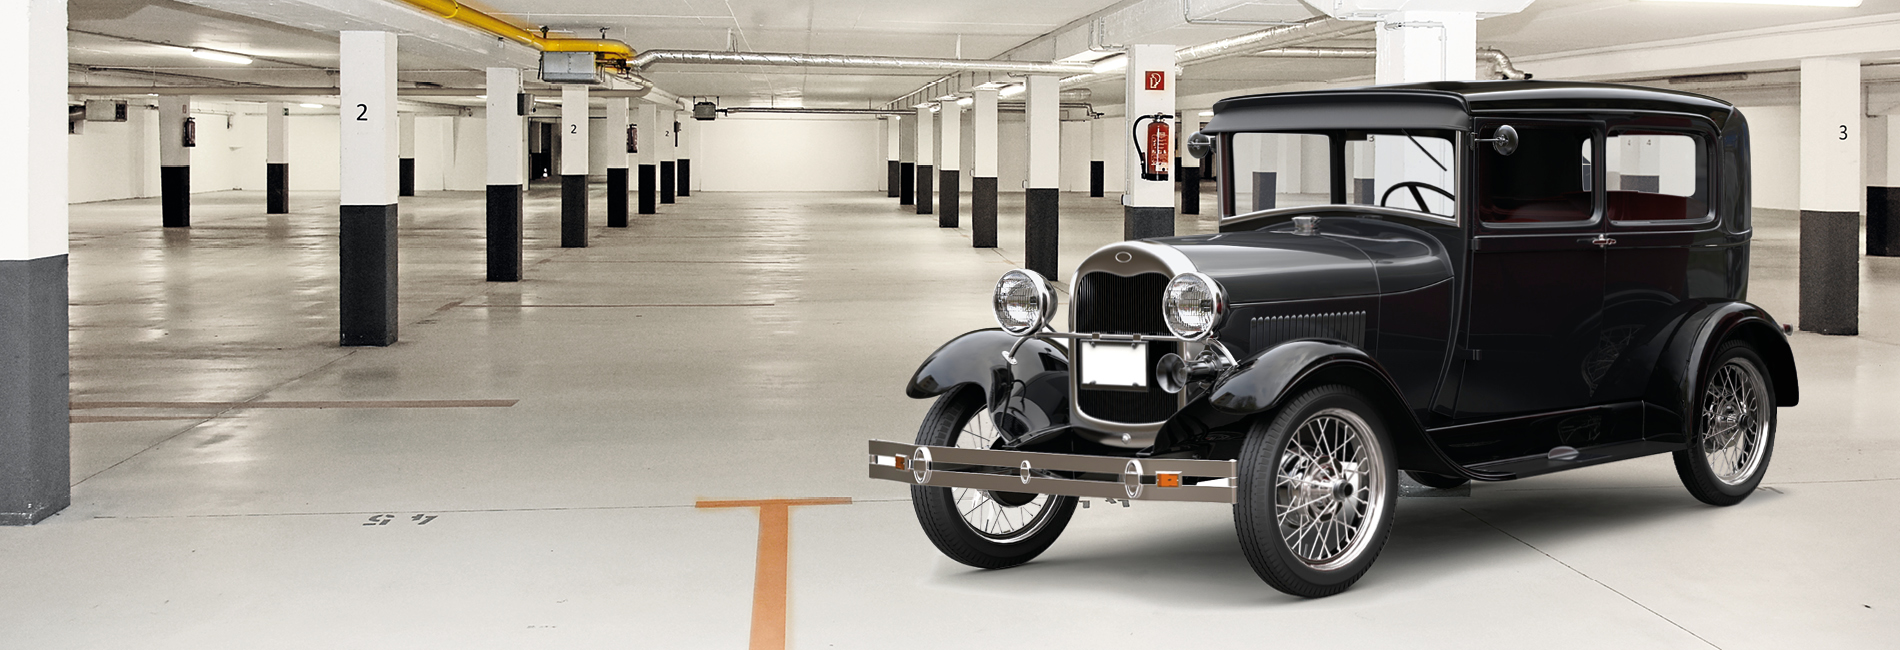 Die Oldtimer Garage Frankfurt » Sicher, sauber & faire Preise!